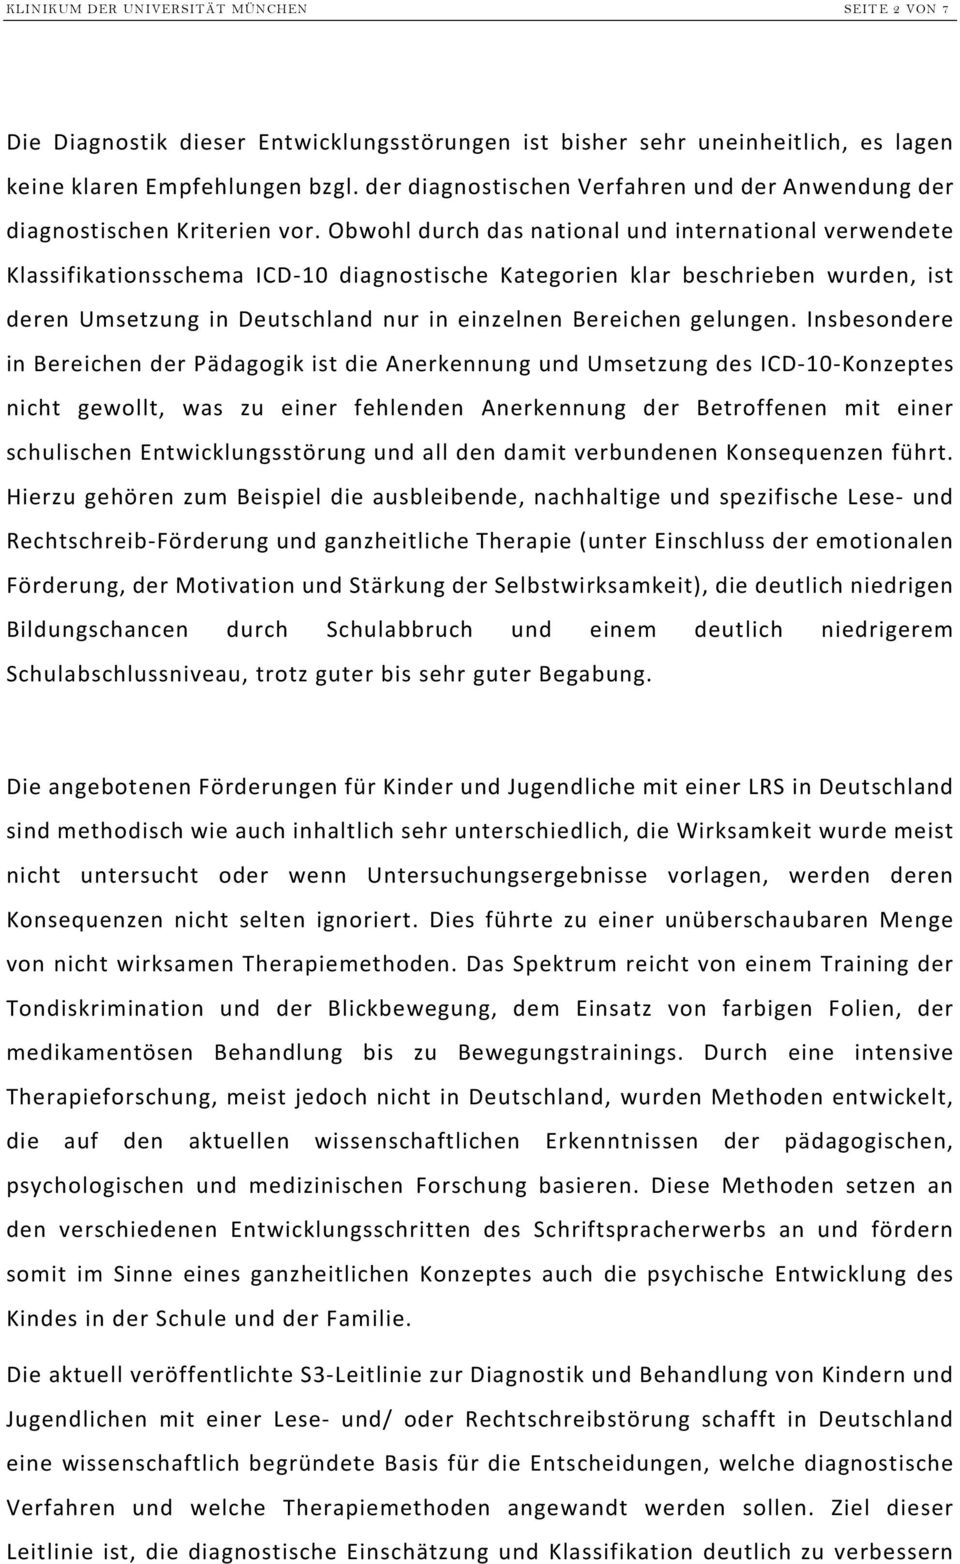 Obwohl durch das national und international verwendete Klassifikationsschema ICD-10 diagnostische Kategorien klar beschrieben wurden, ist deren Umsetzung in Deutschland nur in einzelnen Bereichen